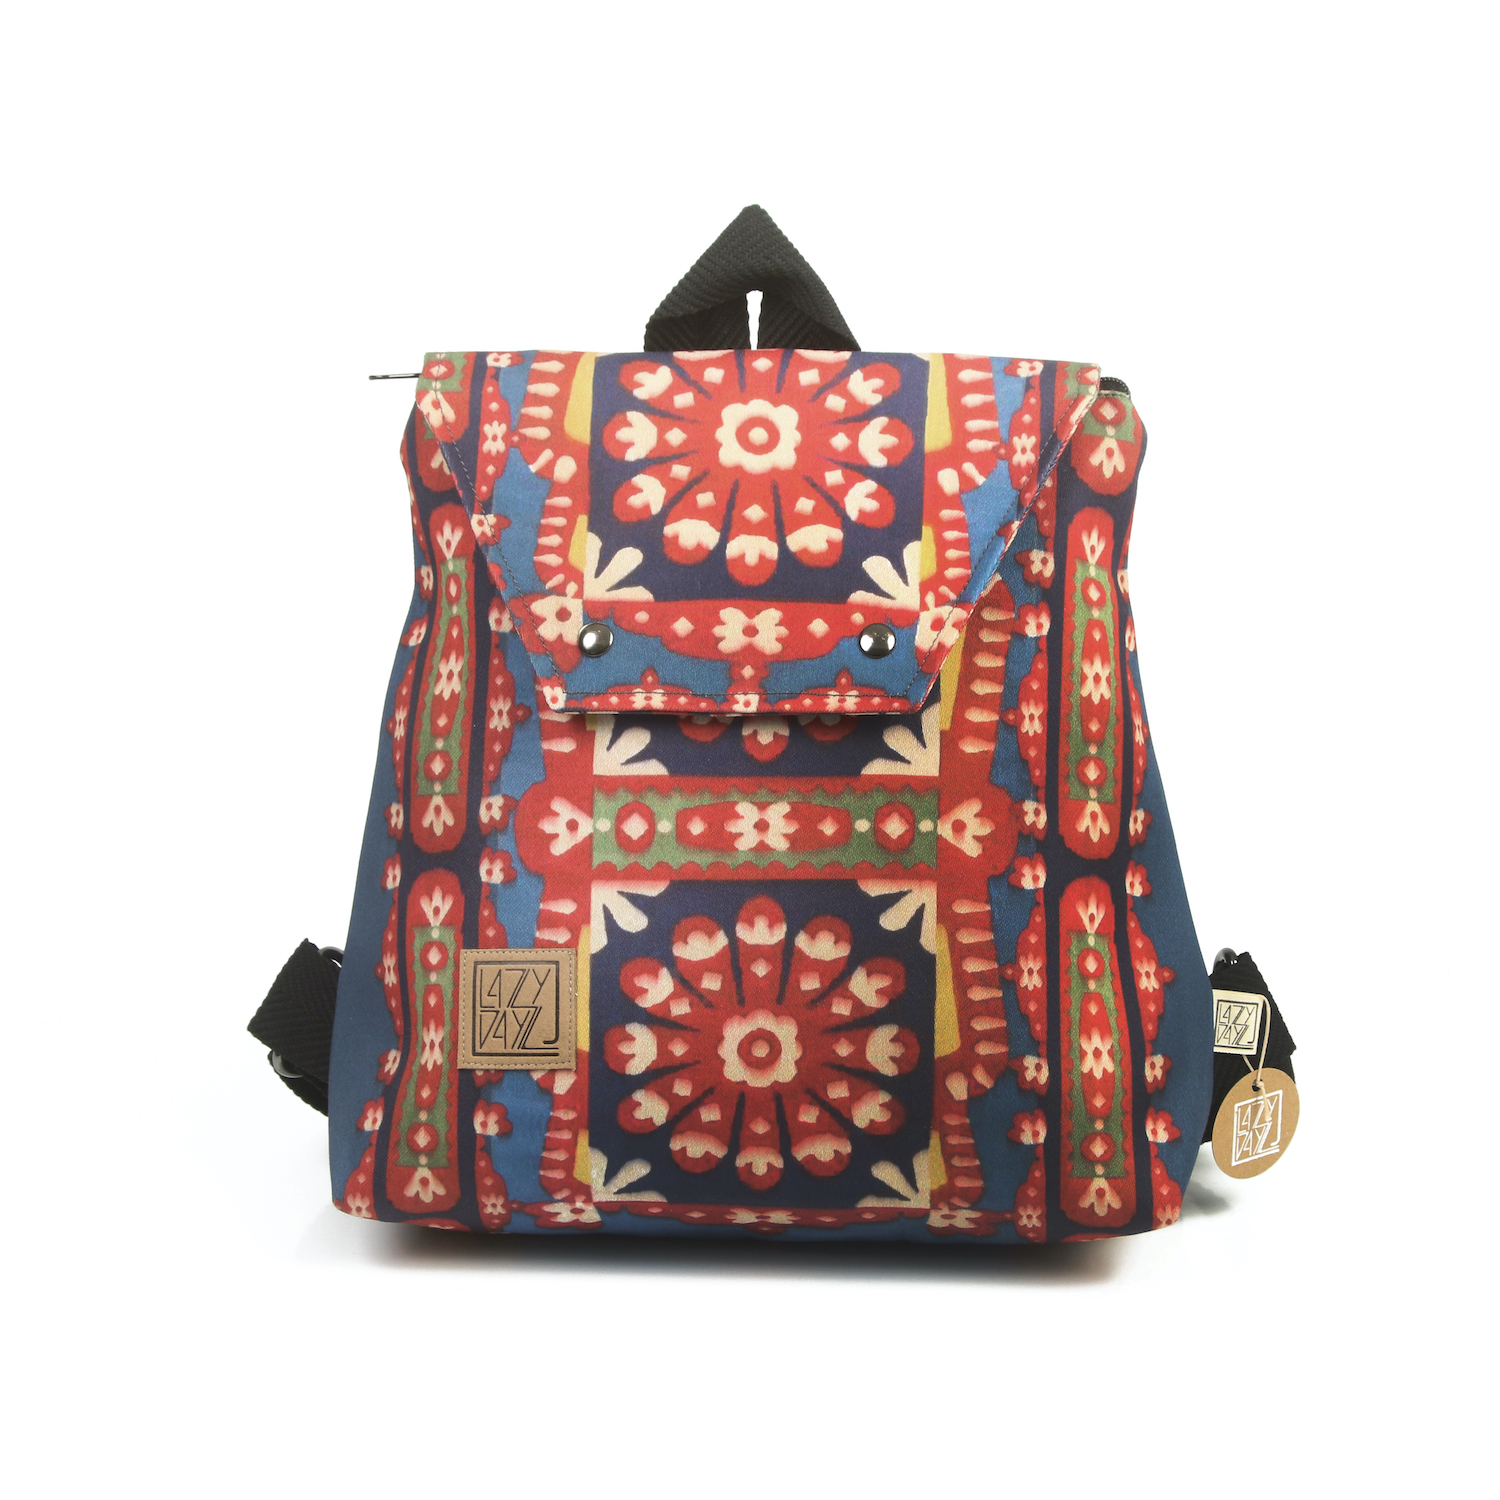 LazyDayz Designs Backpack γυναικείος σάκος πλάτης χειροποίητος bb0307